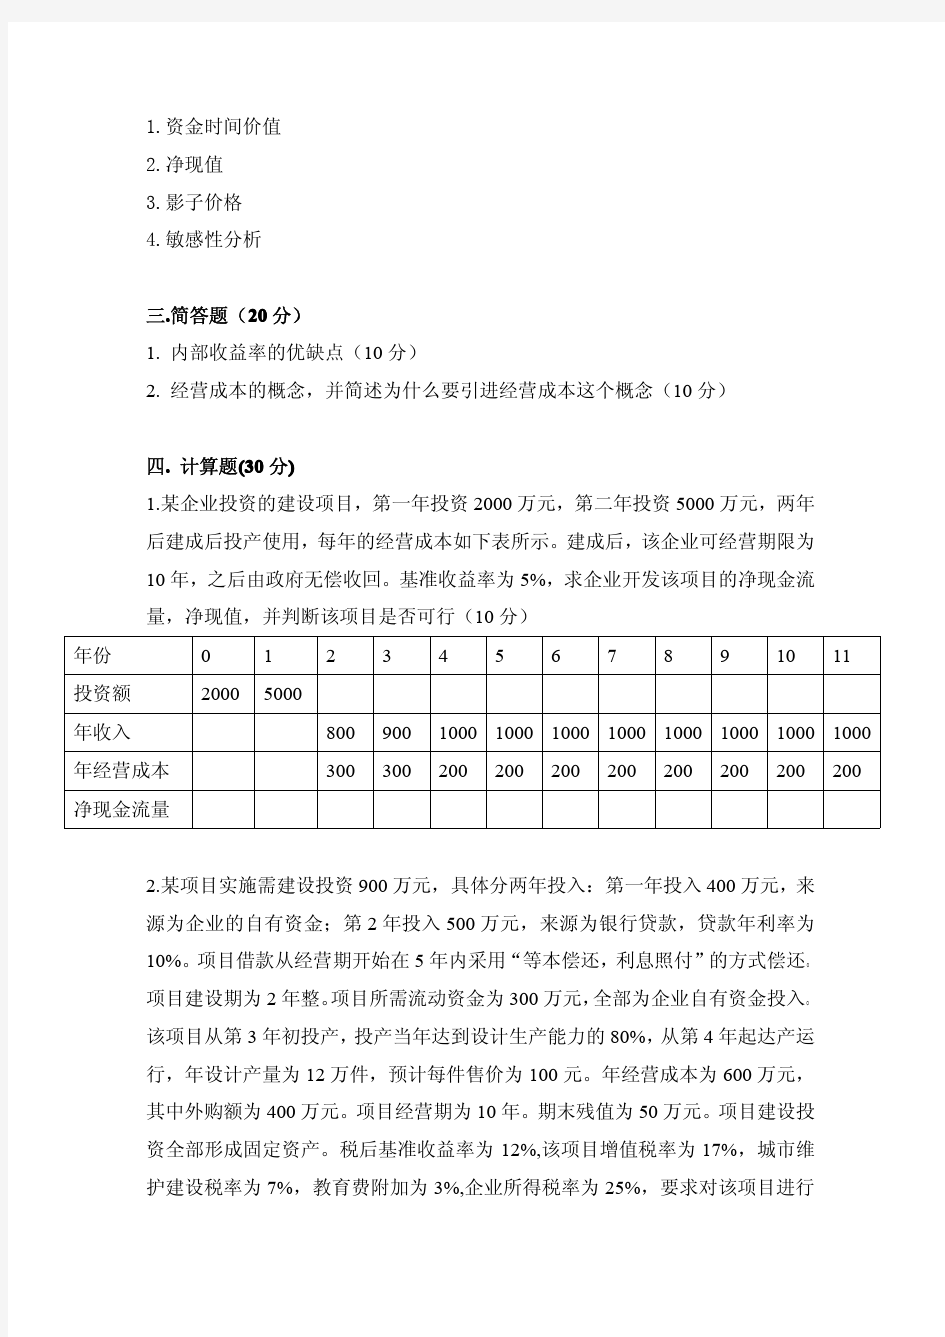 《工程经济学》姜早龙 中南大学出版社 2005年版